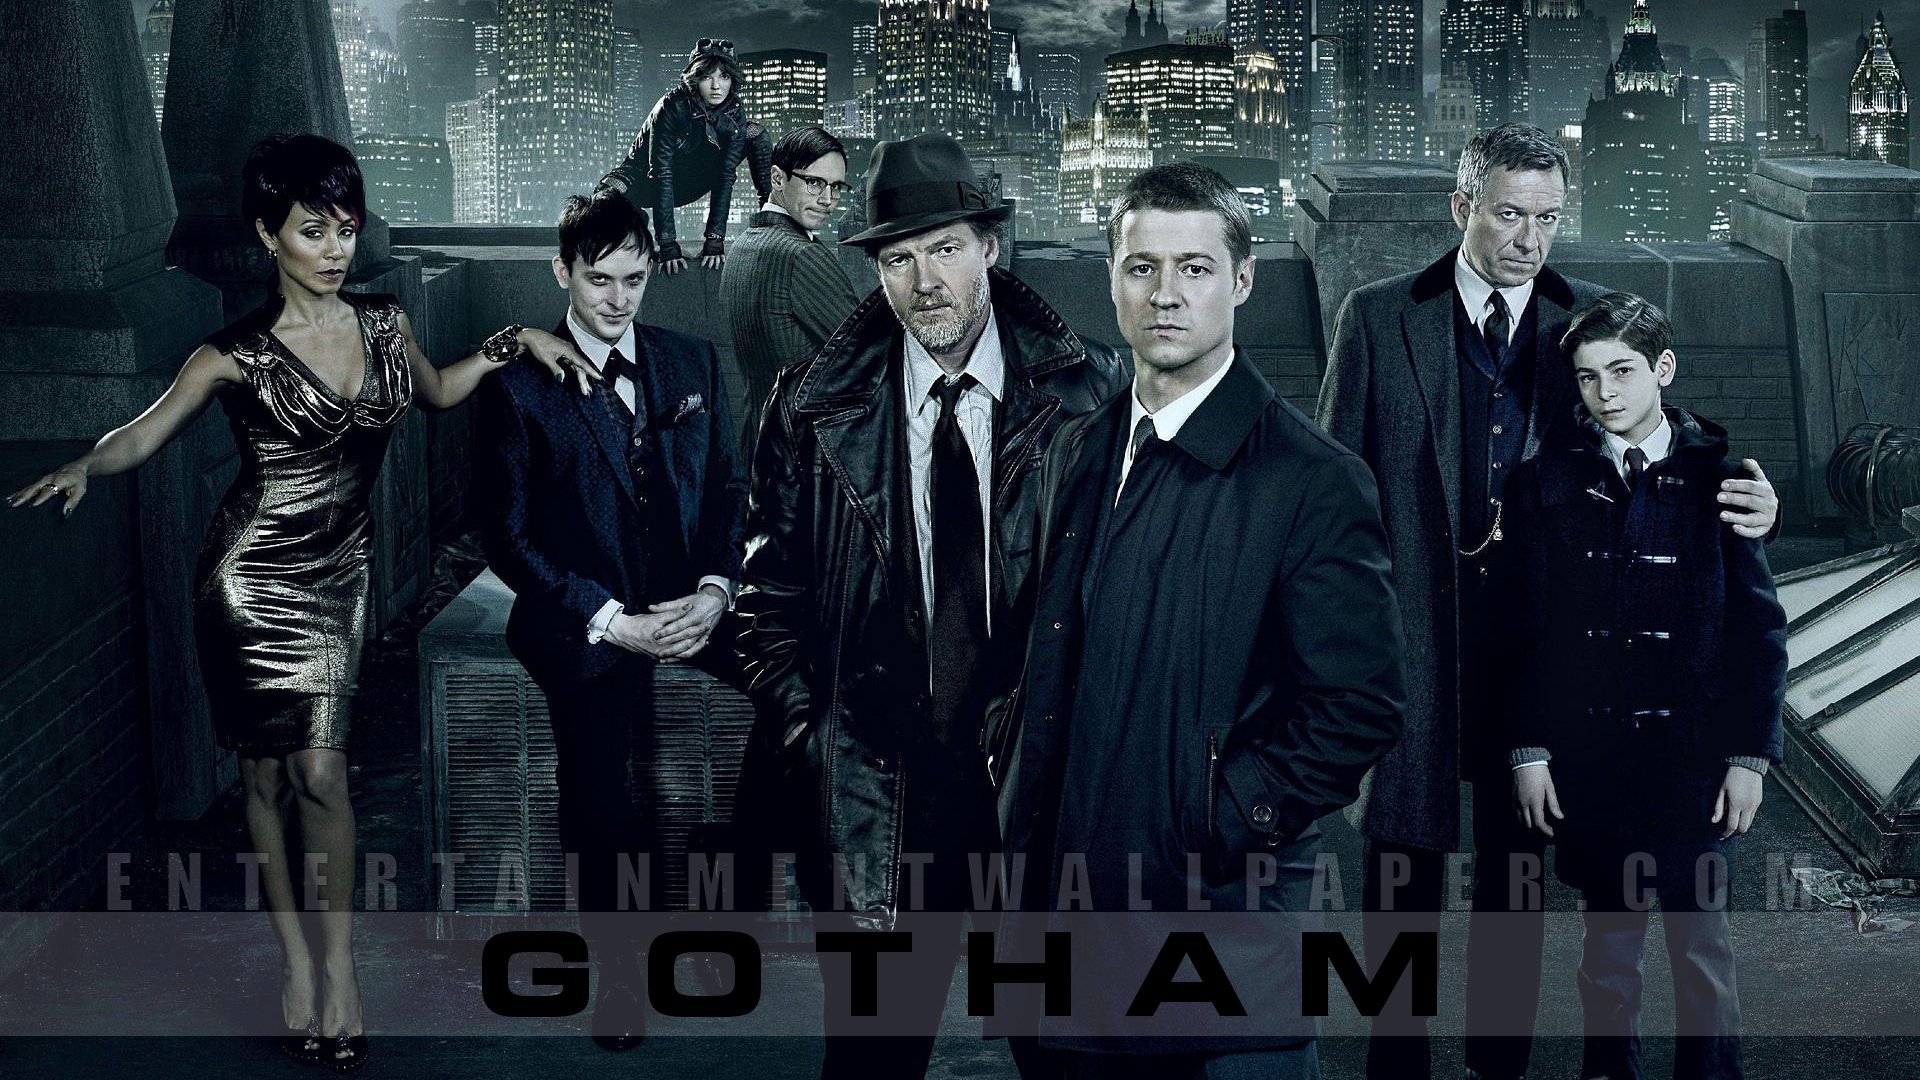 Gotham WallPapers   SETUIXCOM